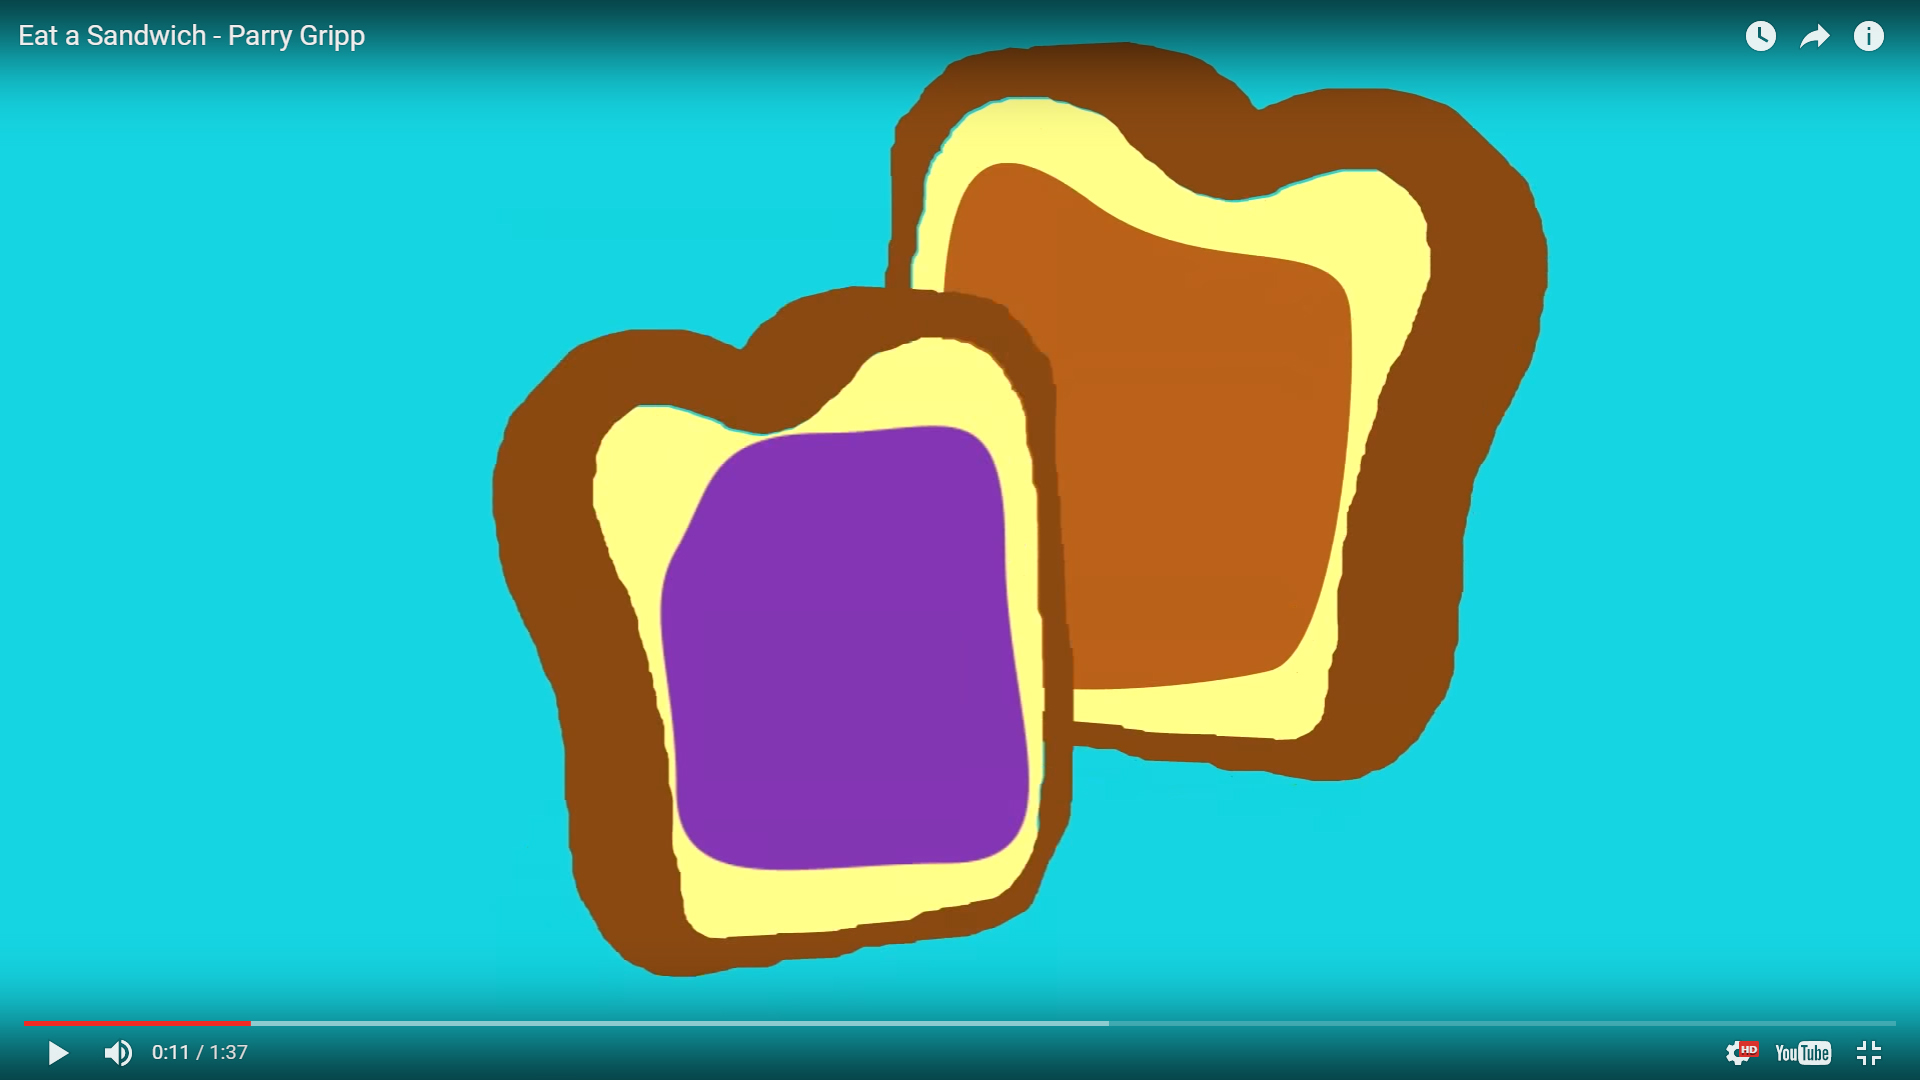 Funny Bread Video – Eat a Sandwich